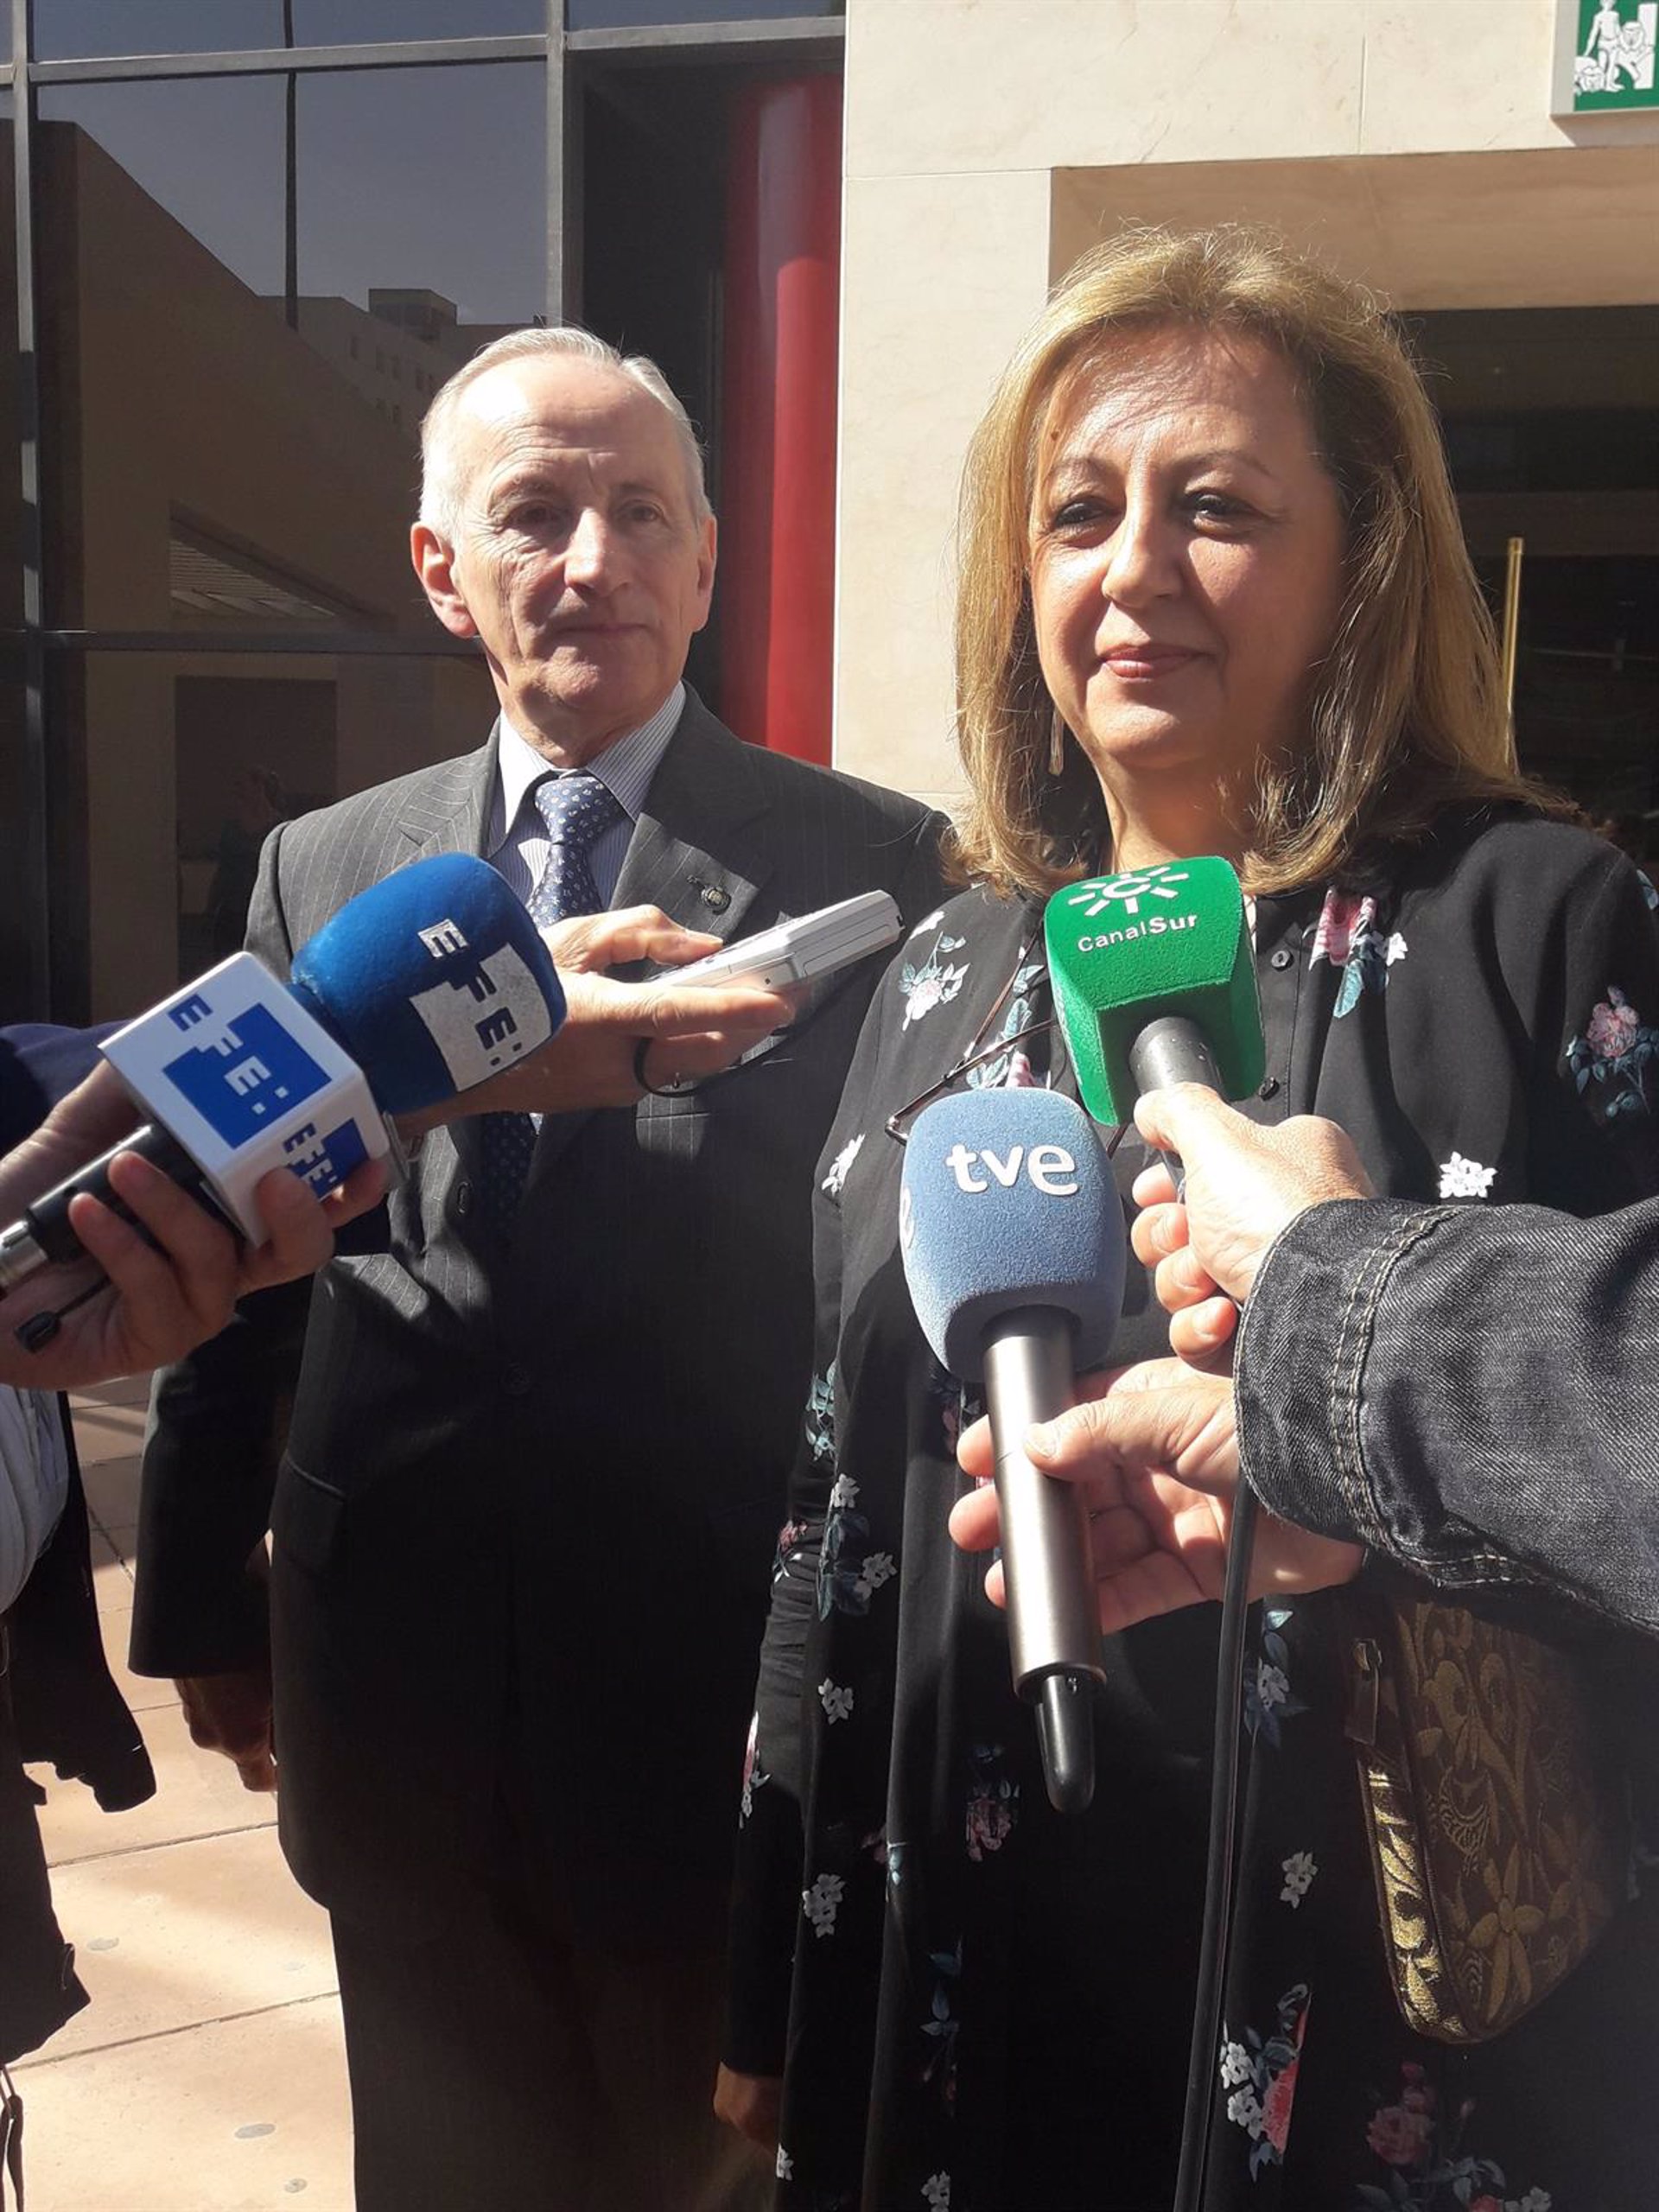 Abren juicio oral contra la exdirectora de la Alhambra por el caso audioguías